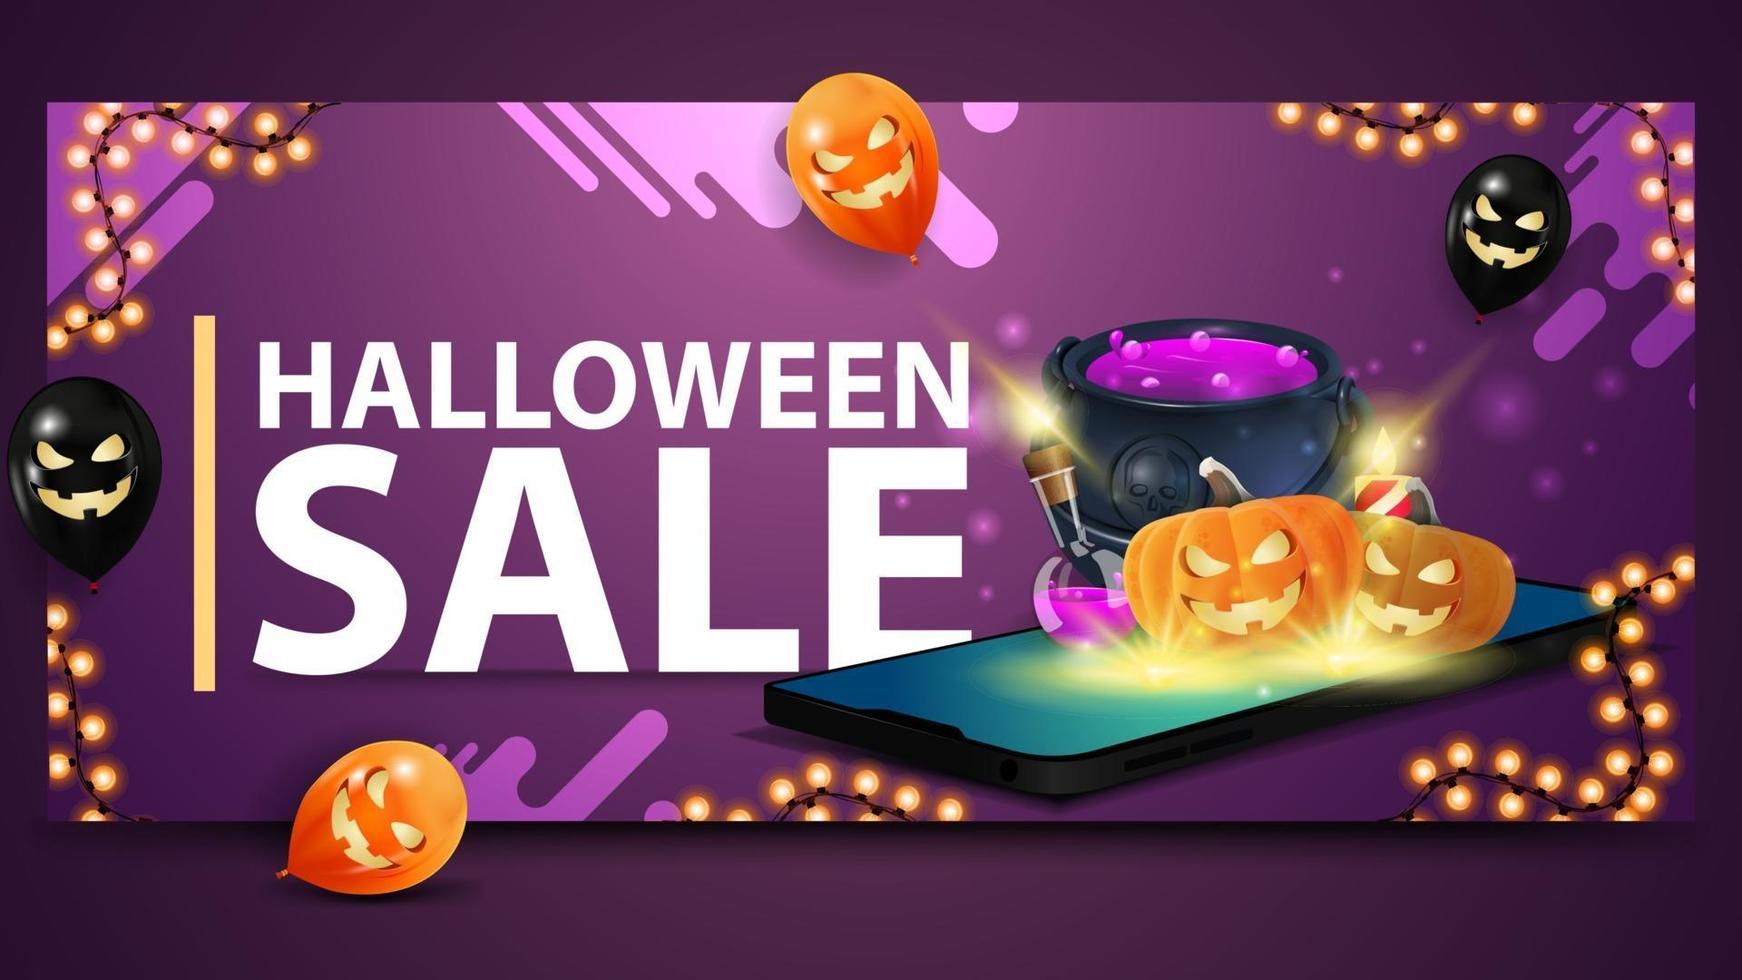 Halloween-Verkauf, modernes lila Banner für Website mit Ballons, Girlande und Smartphone, von dem aus Hexenkessel und Kürbis-Jack projiziert werden vektor